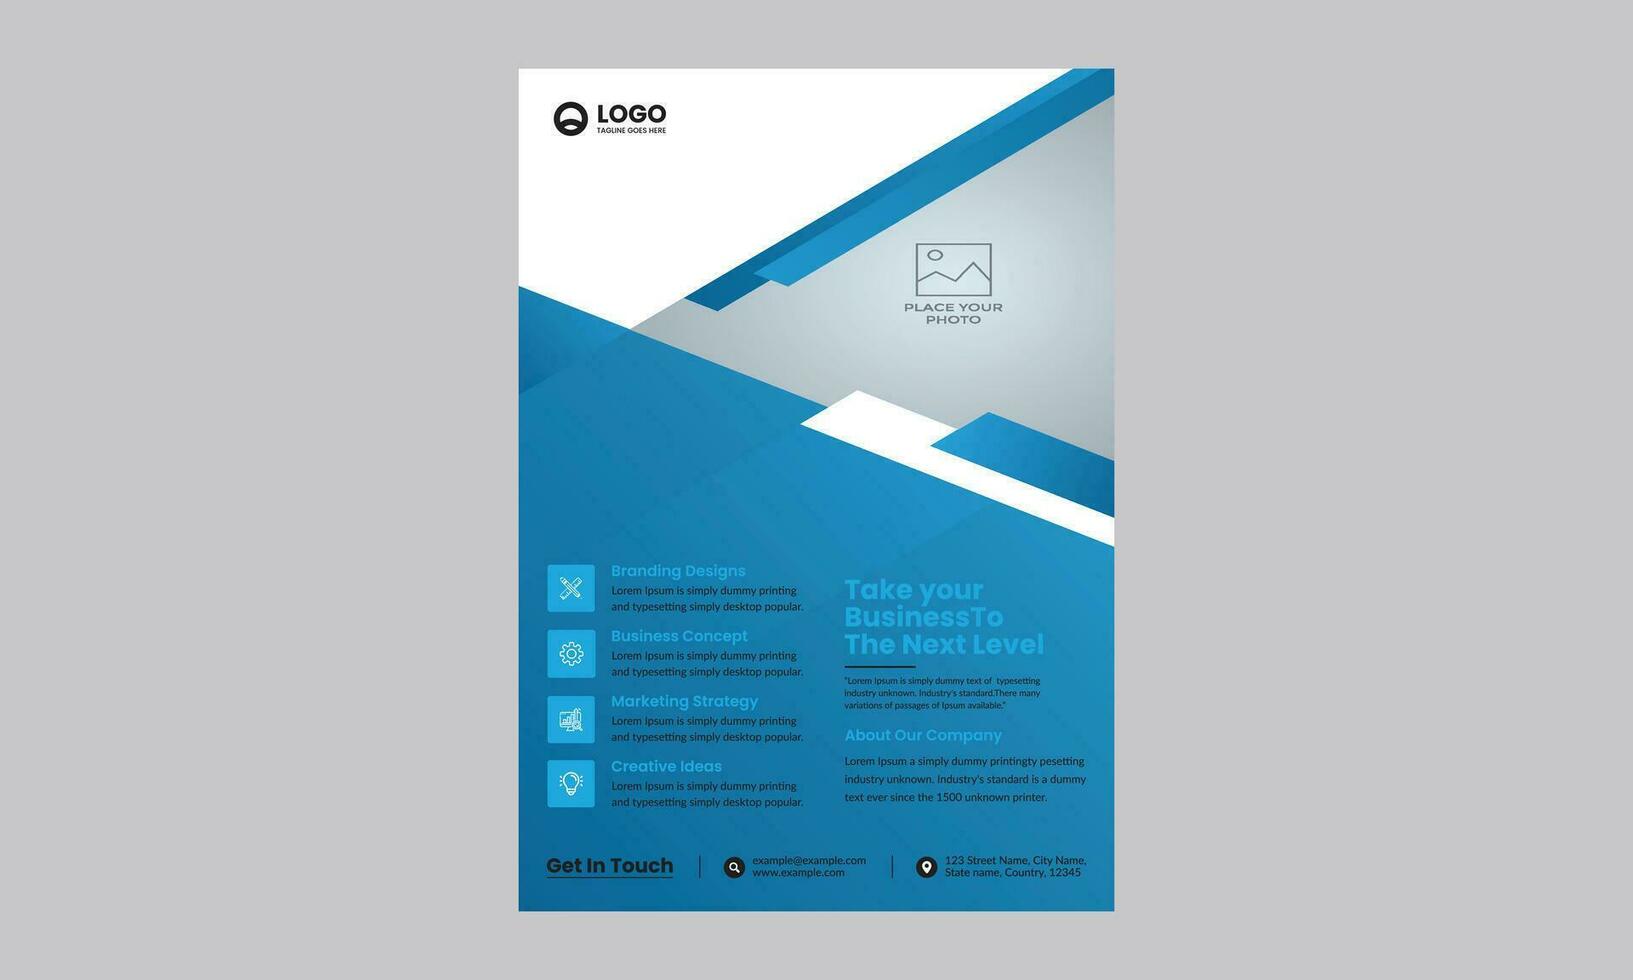 diseño de folletos, diseño de portada moderno, informe anual, póster, folleto en a4 vector